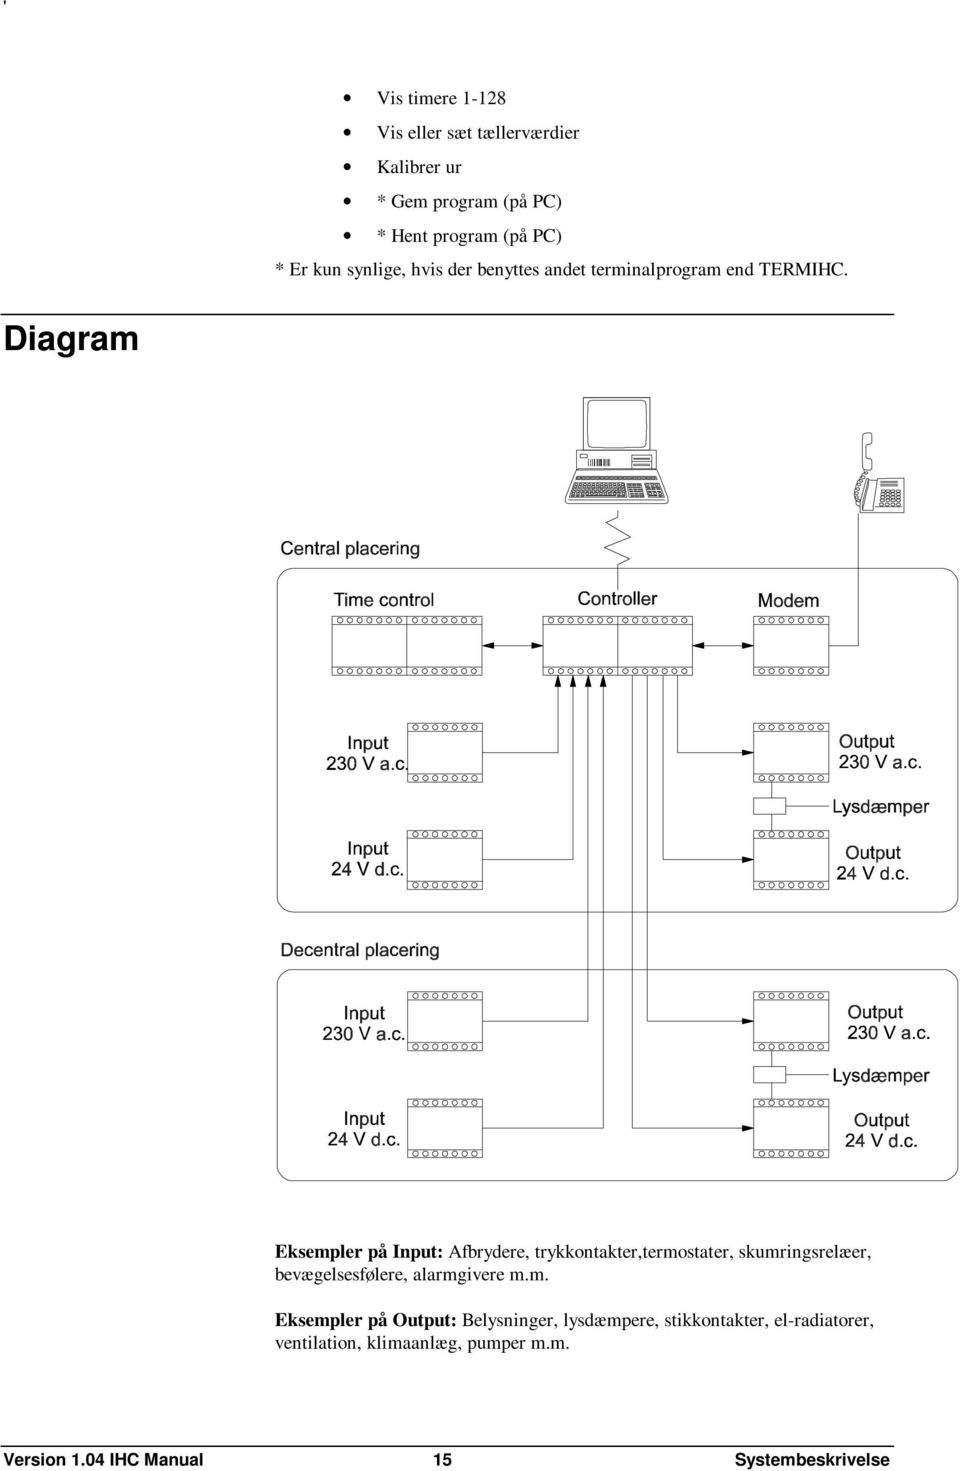 Diagram Eksempler på Input: Afbrydere, trykkontakter,termostater, skumringsrelæer, bevægelsesfølere,